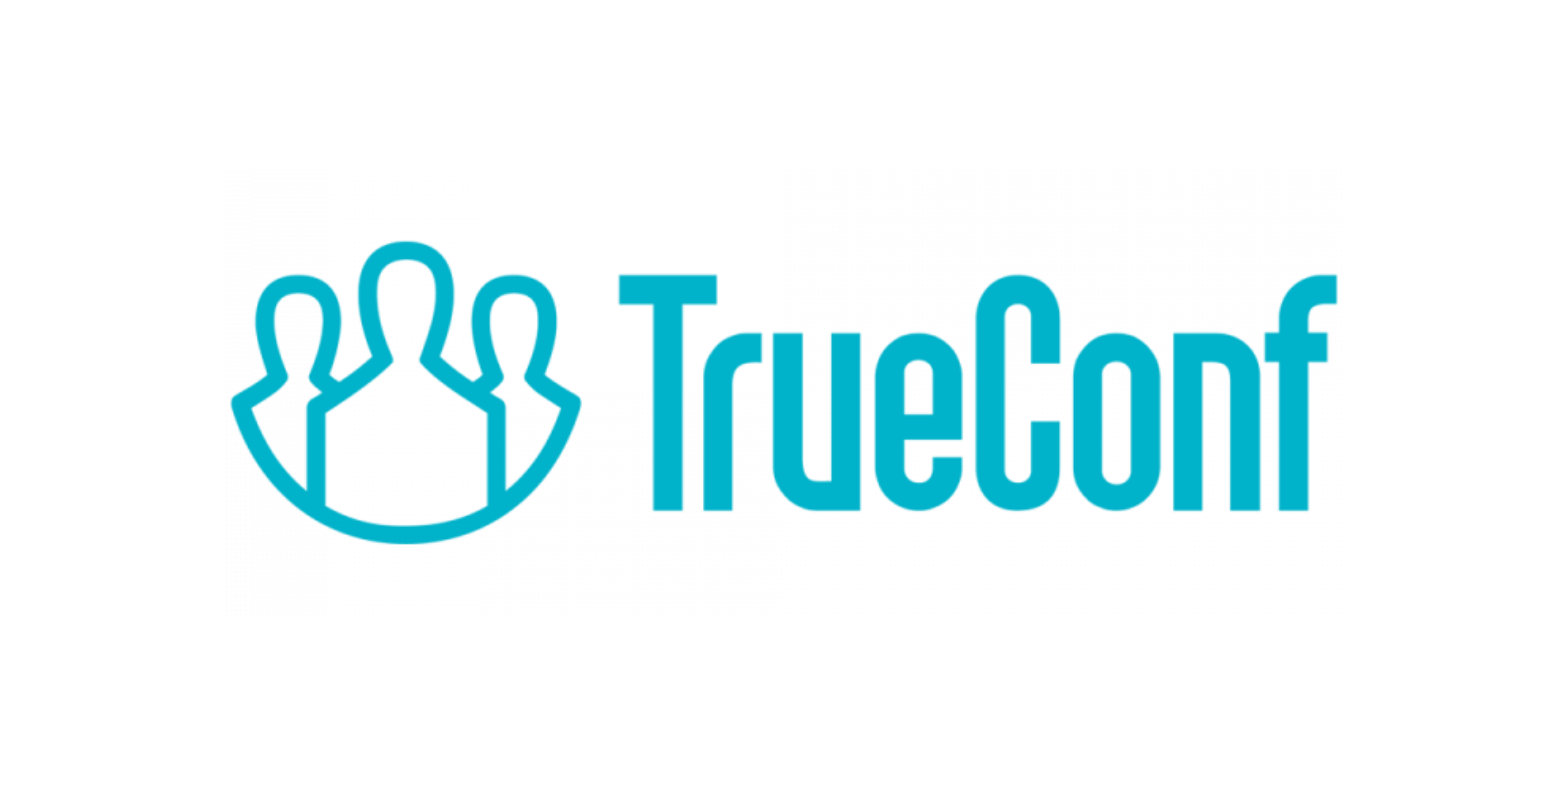 TrueConf Server Техническая поддержка на 1 год расширенная 100-149 онлайн-пользователей